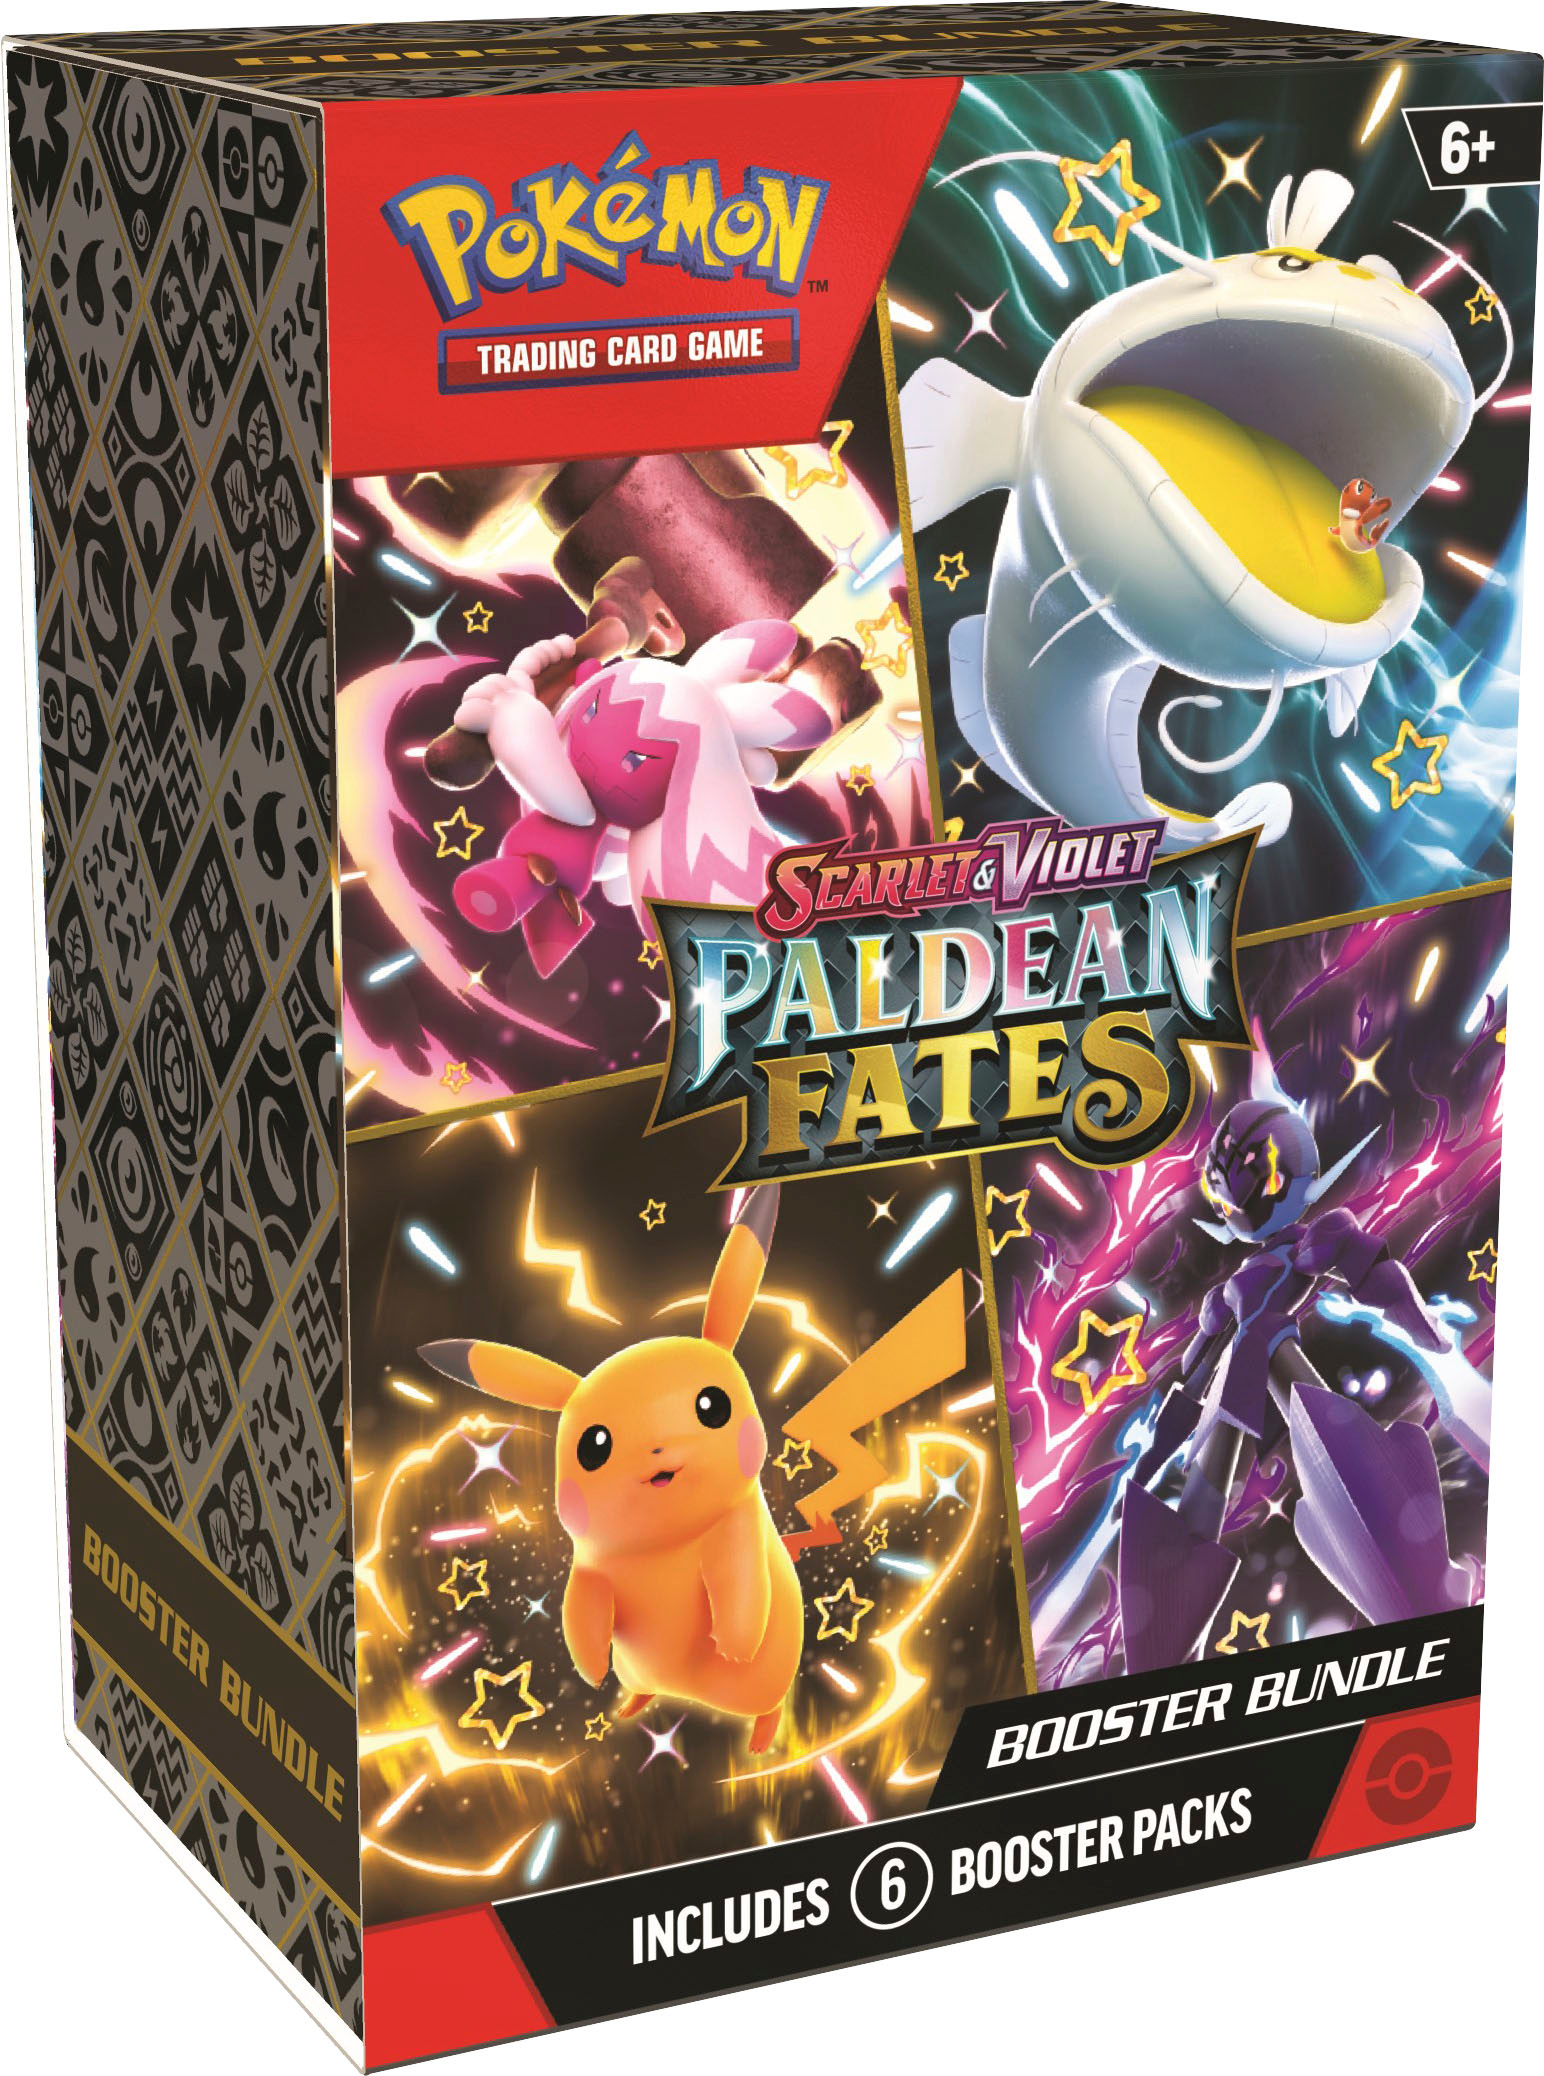 Pokémon Trading Card Game: Scarlet & Violet—Paldean Fates 6pk Booster Bundle  290-87617 - Best Buy